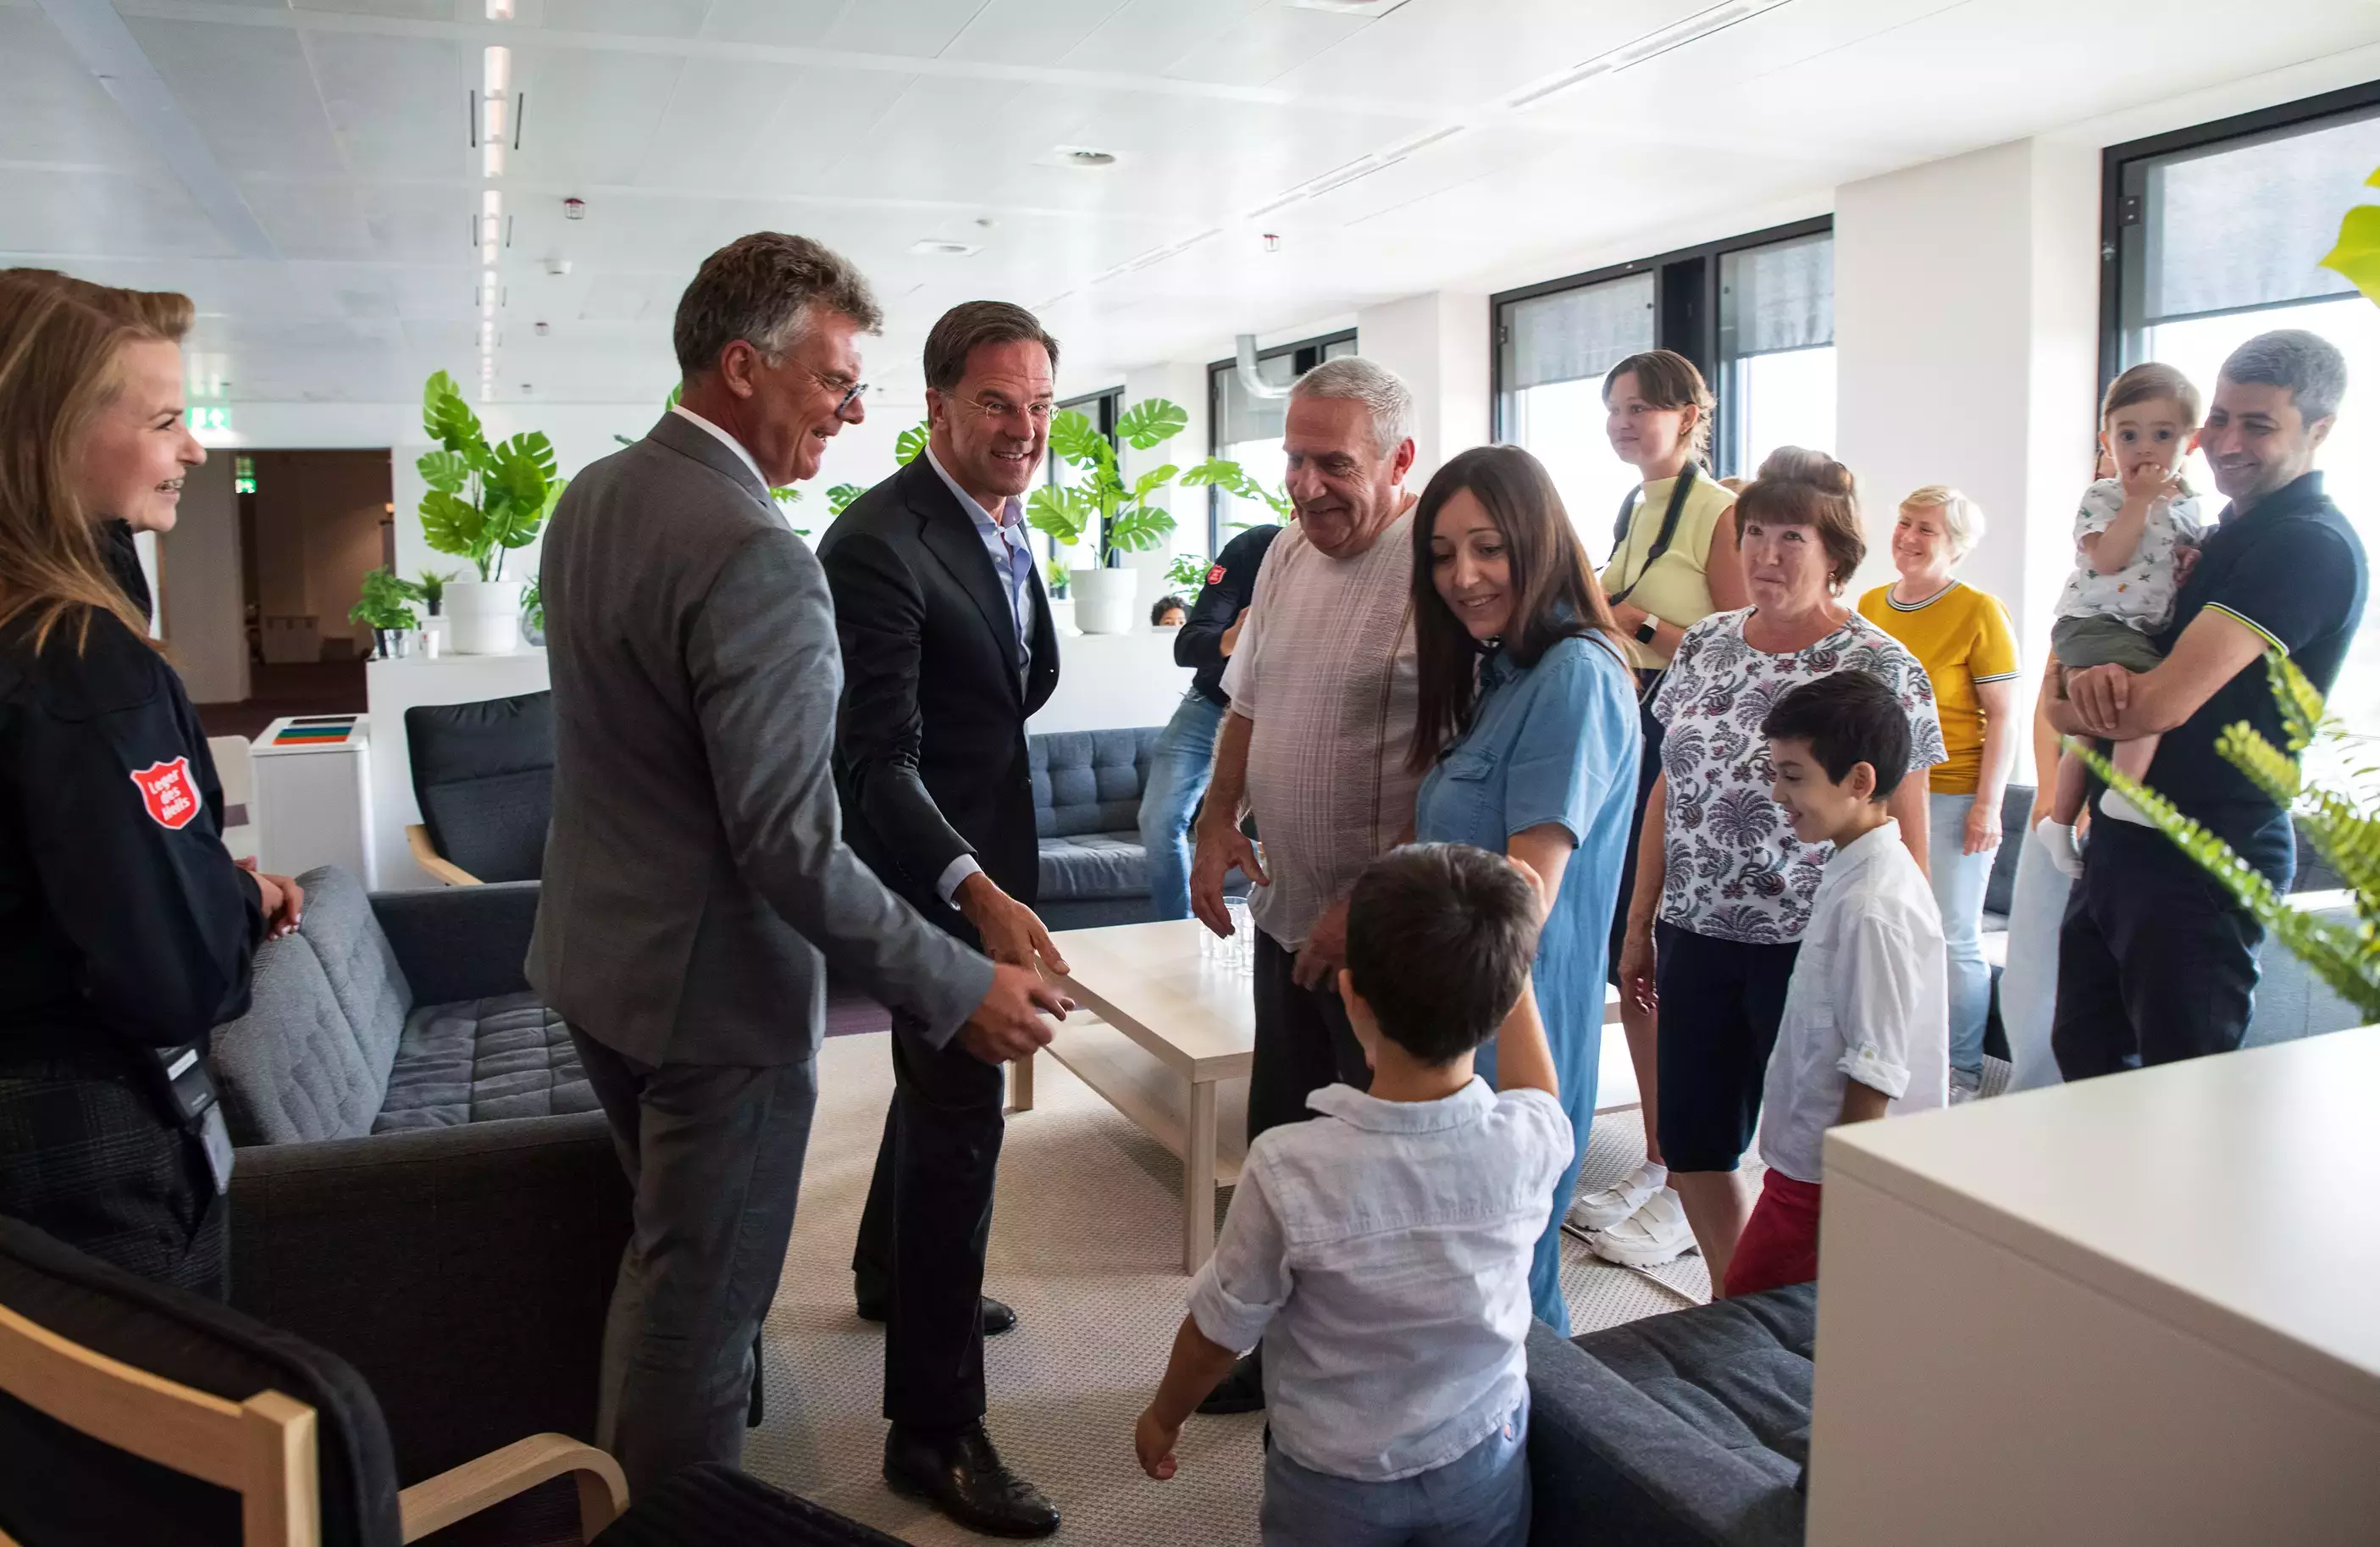 Bezoek van premier Rutte en Commissaris van de Koning aan de opvanglocatie van Oekraïners in Huis van de Provincie. Premier Rutte en ik staan temidden van een familie en geven een jongetje een hand.